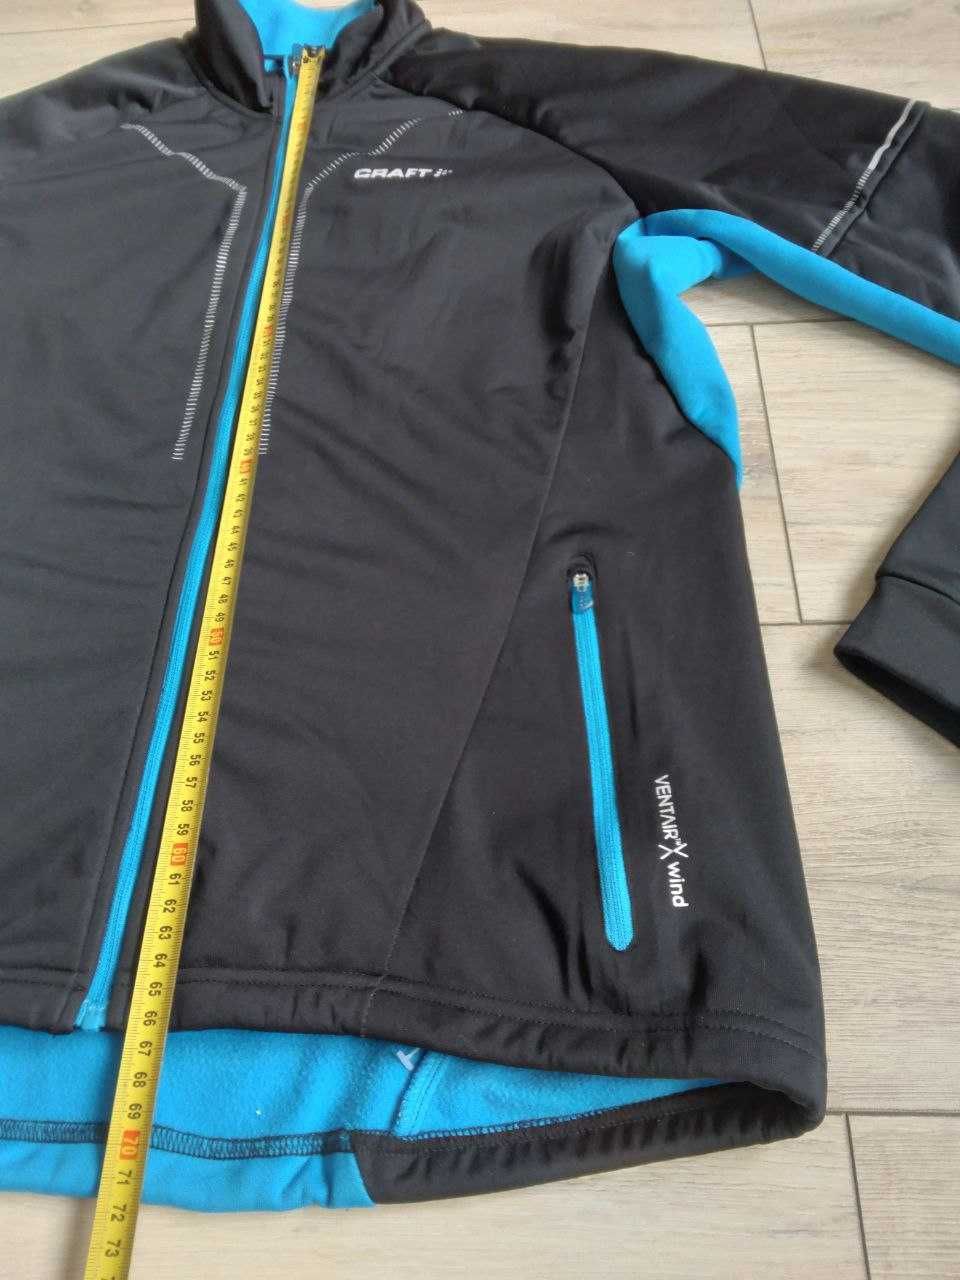 Craft Storm 2.0 термо куртка для бігу, вело, бігових лиж р.L